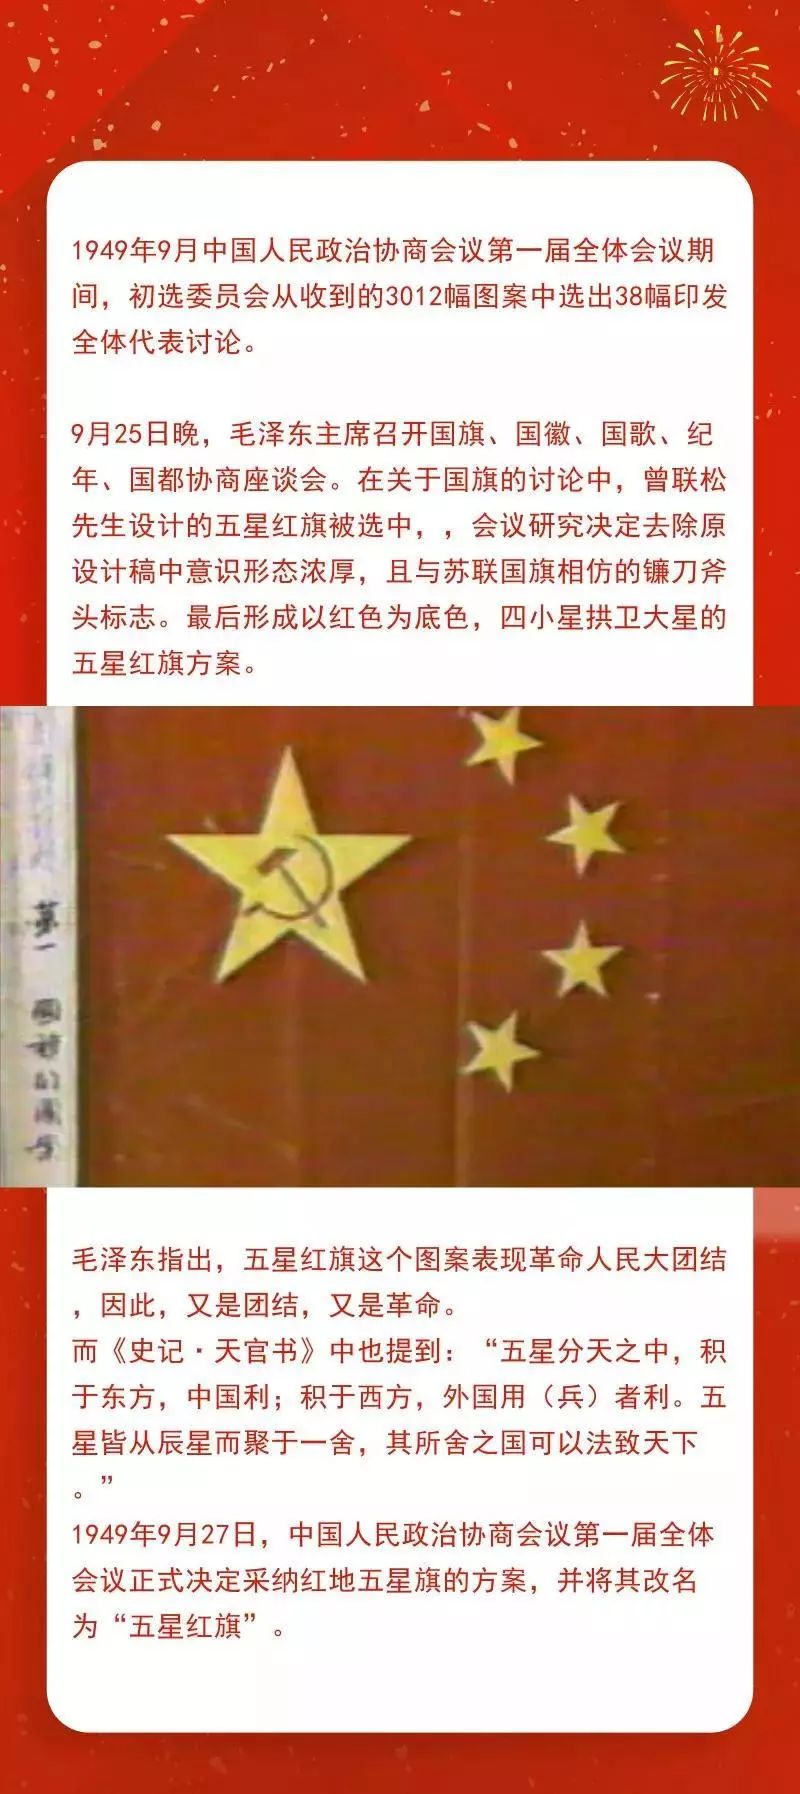 让我们一起走进解放初期的这段历史吧而它又为何可以代表中国的国旗?